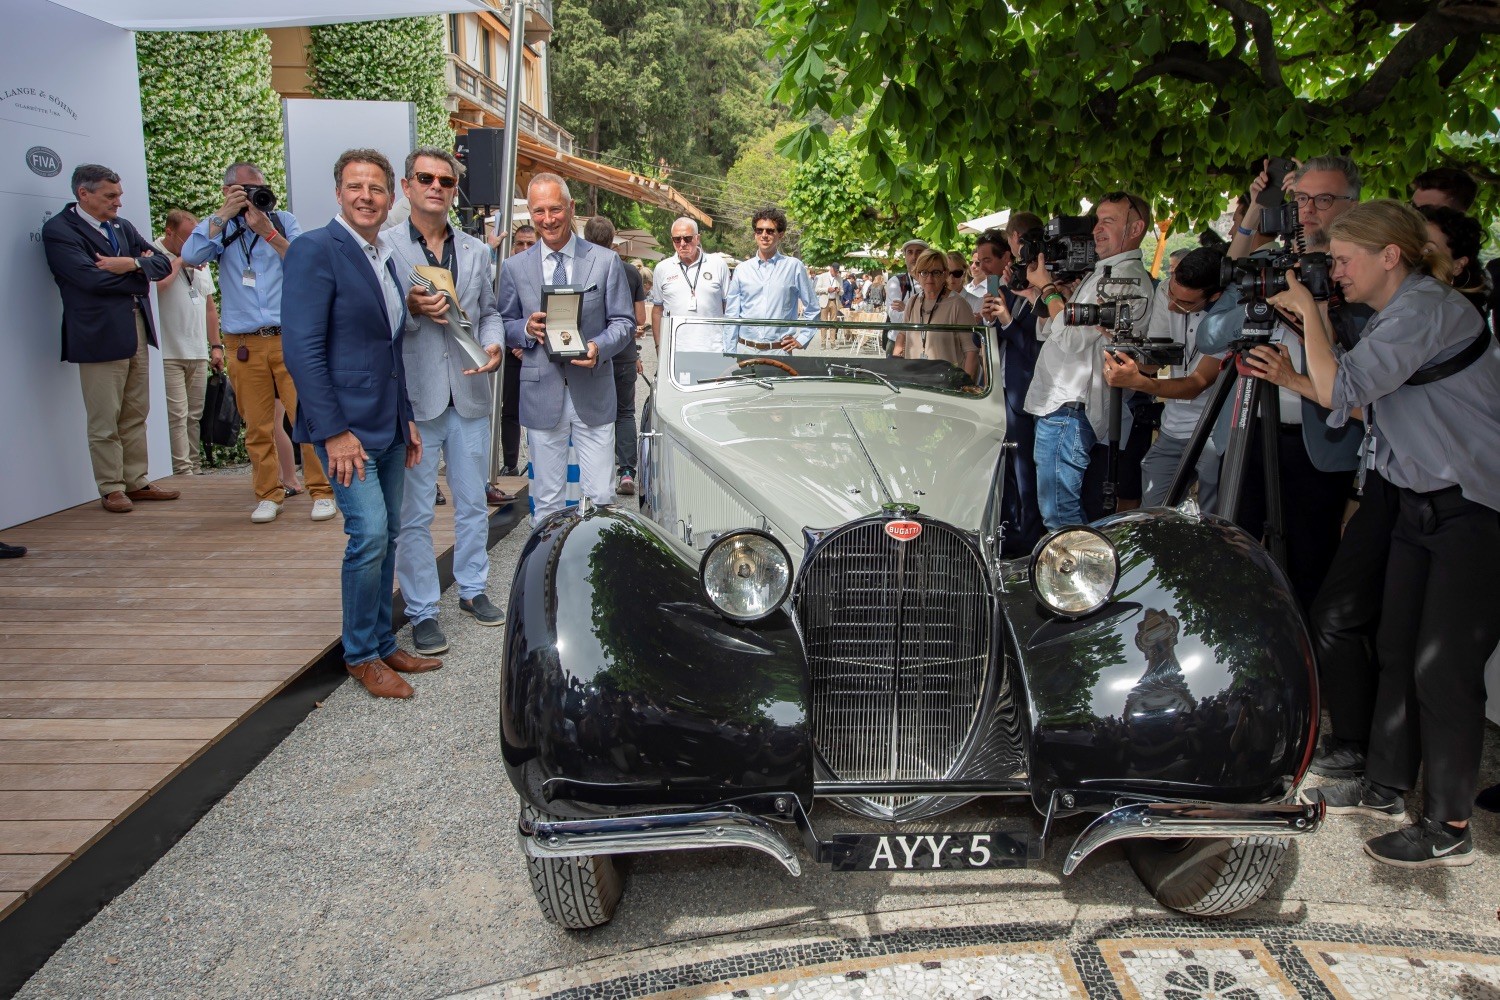 Bugatti 57 S Is the Impressive Winner of the Concorso d'Eleganza Villa ...